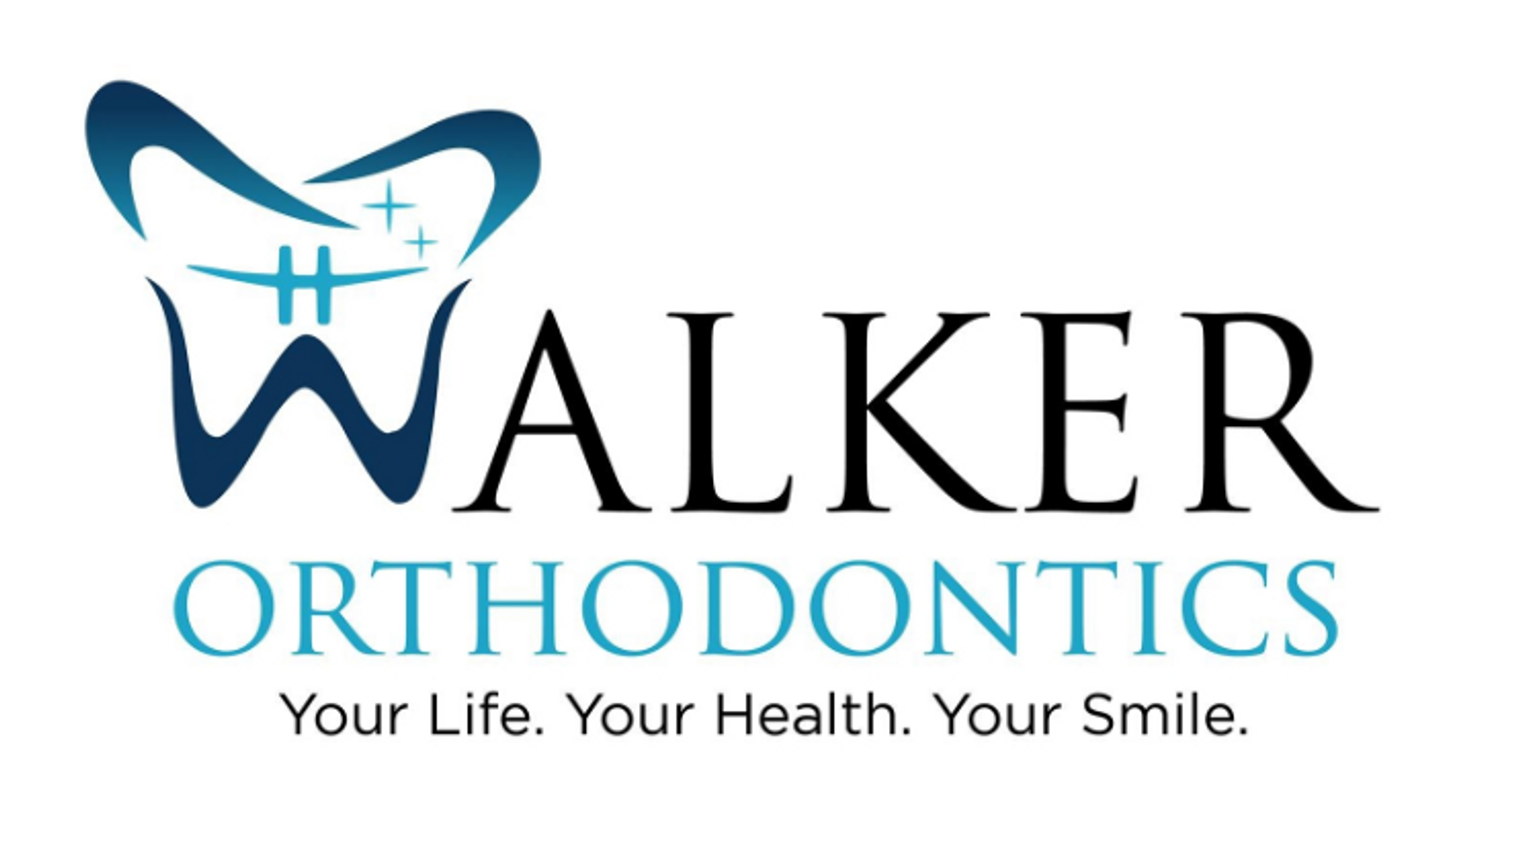 Dr Walker Orthodontics